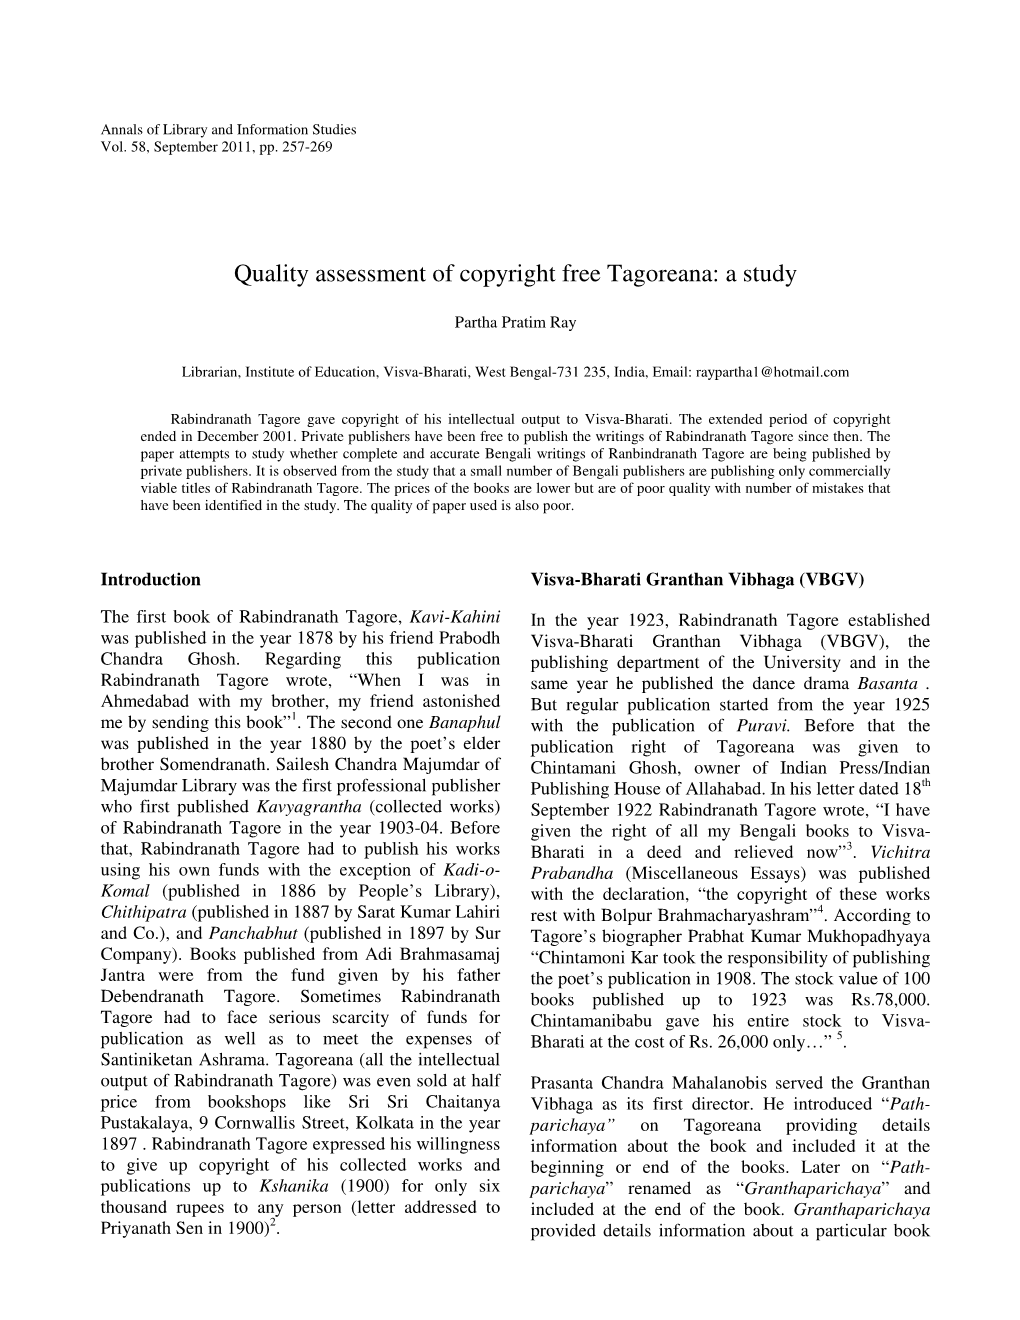 Quality Assessment of Copyright Free Tagoreana: a Study